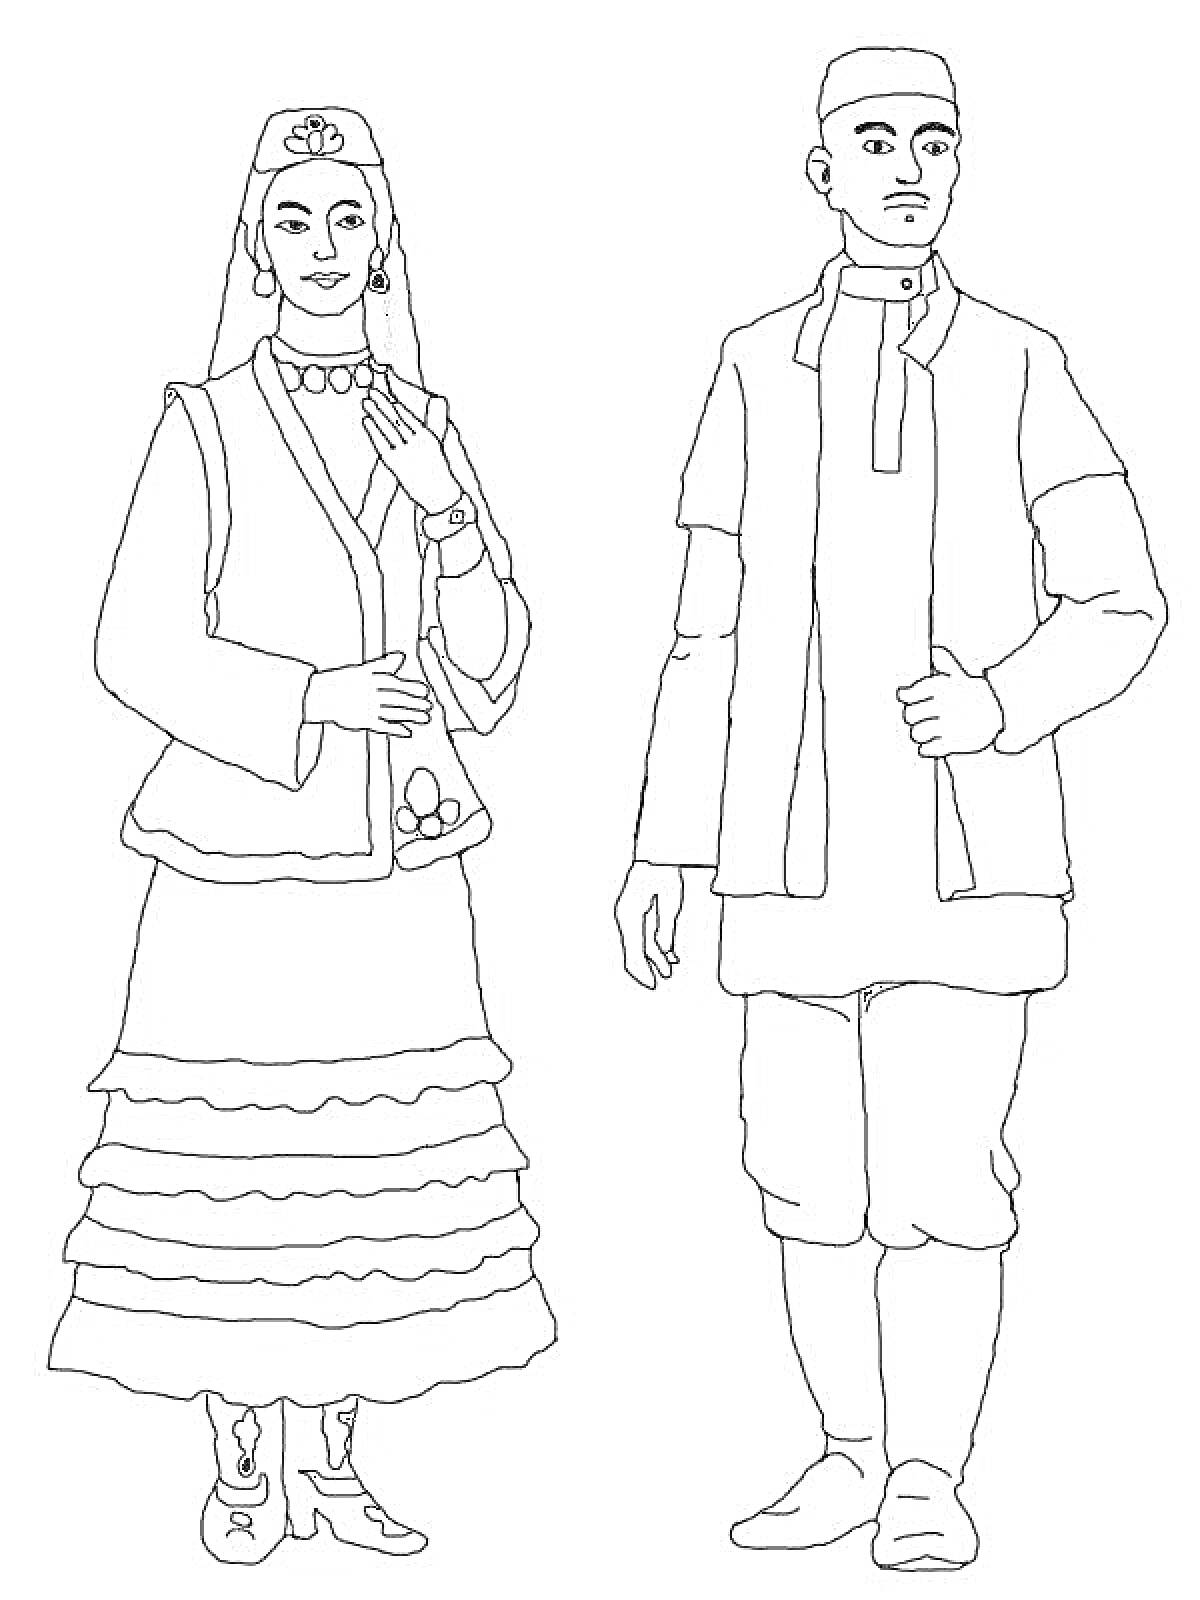 Раскраска Традиционные национальные костюмы мужчины и женщины, состоящие из головных уборов, верхней и нижней одежды